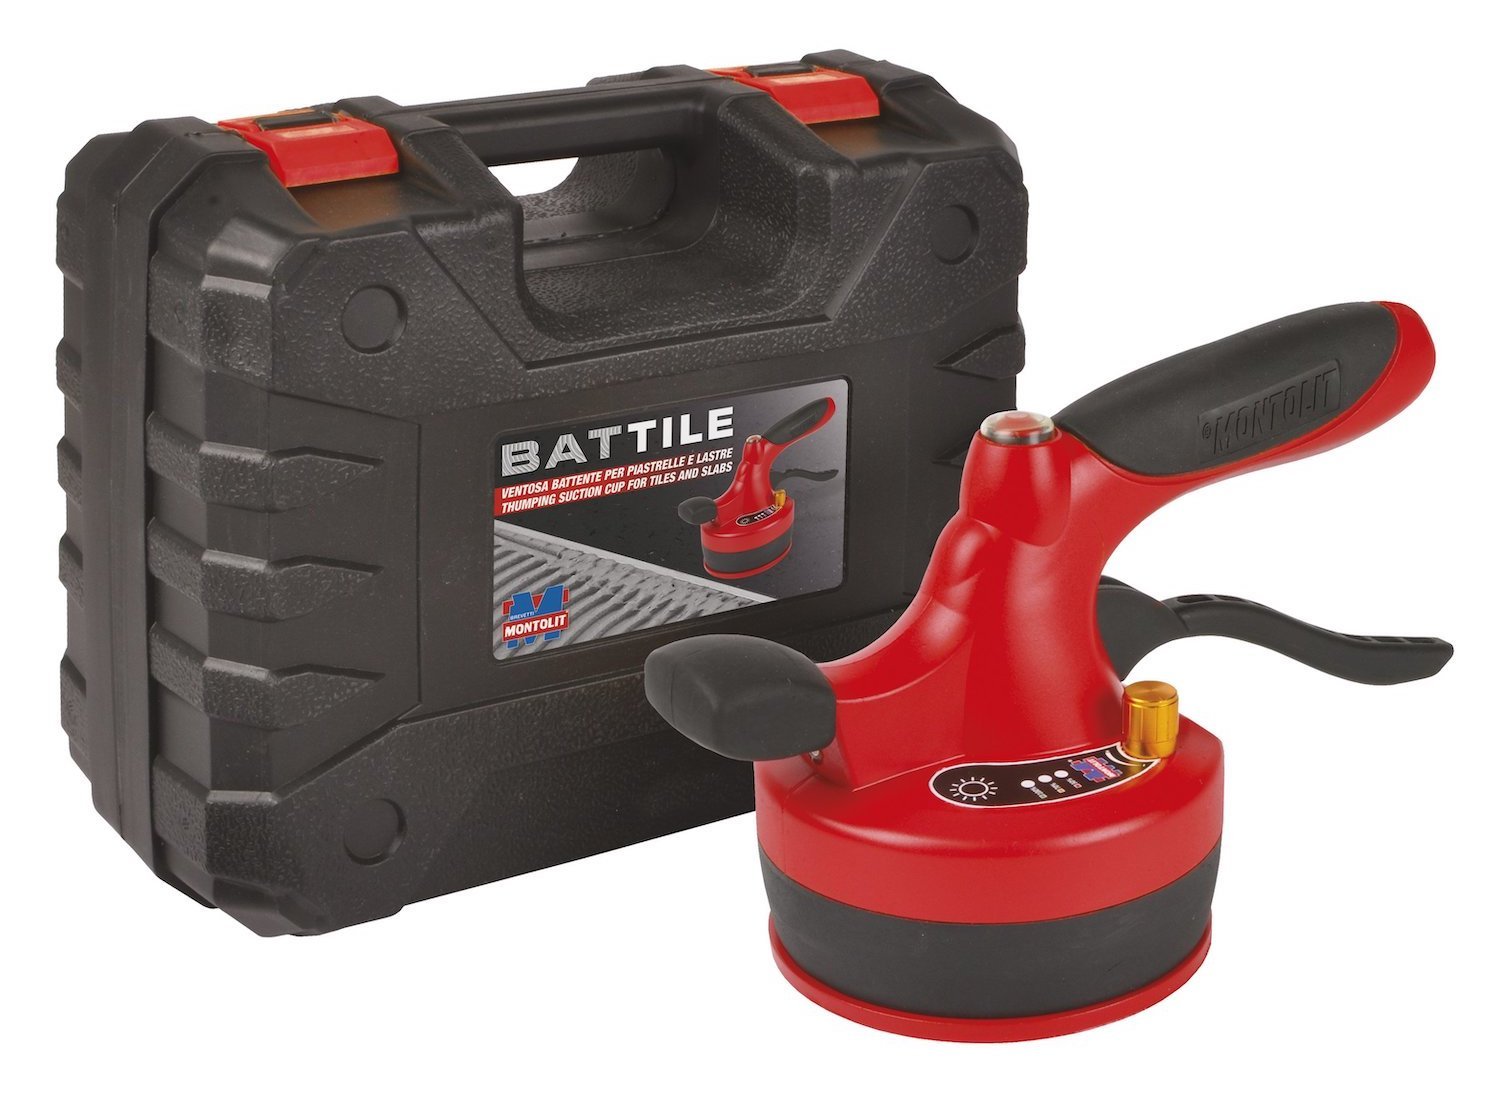 BATTILE - bateriový vibrátor s přísavkou na pokládku velkoformátové dlažby